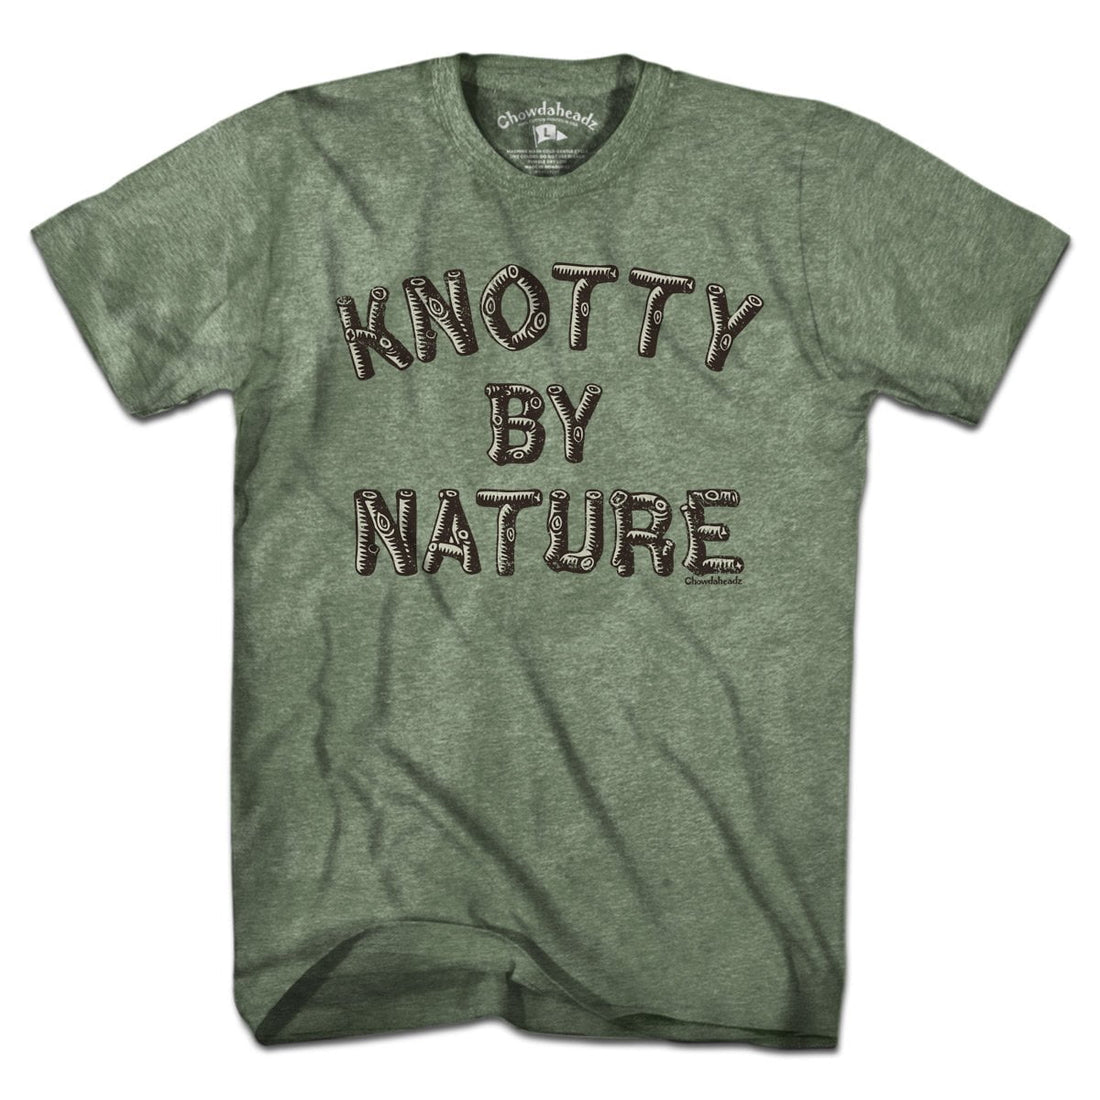 Knotty By Nature T-Shirt - Chowdaheadz